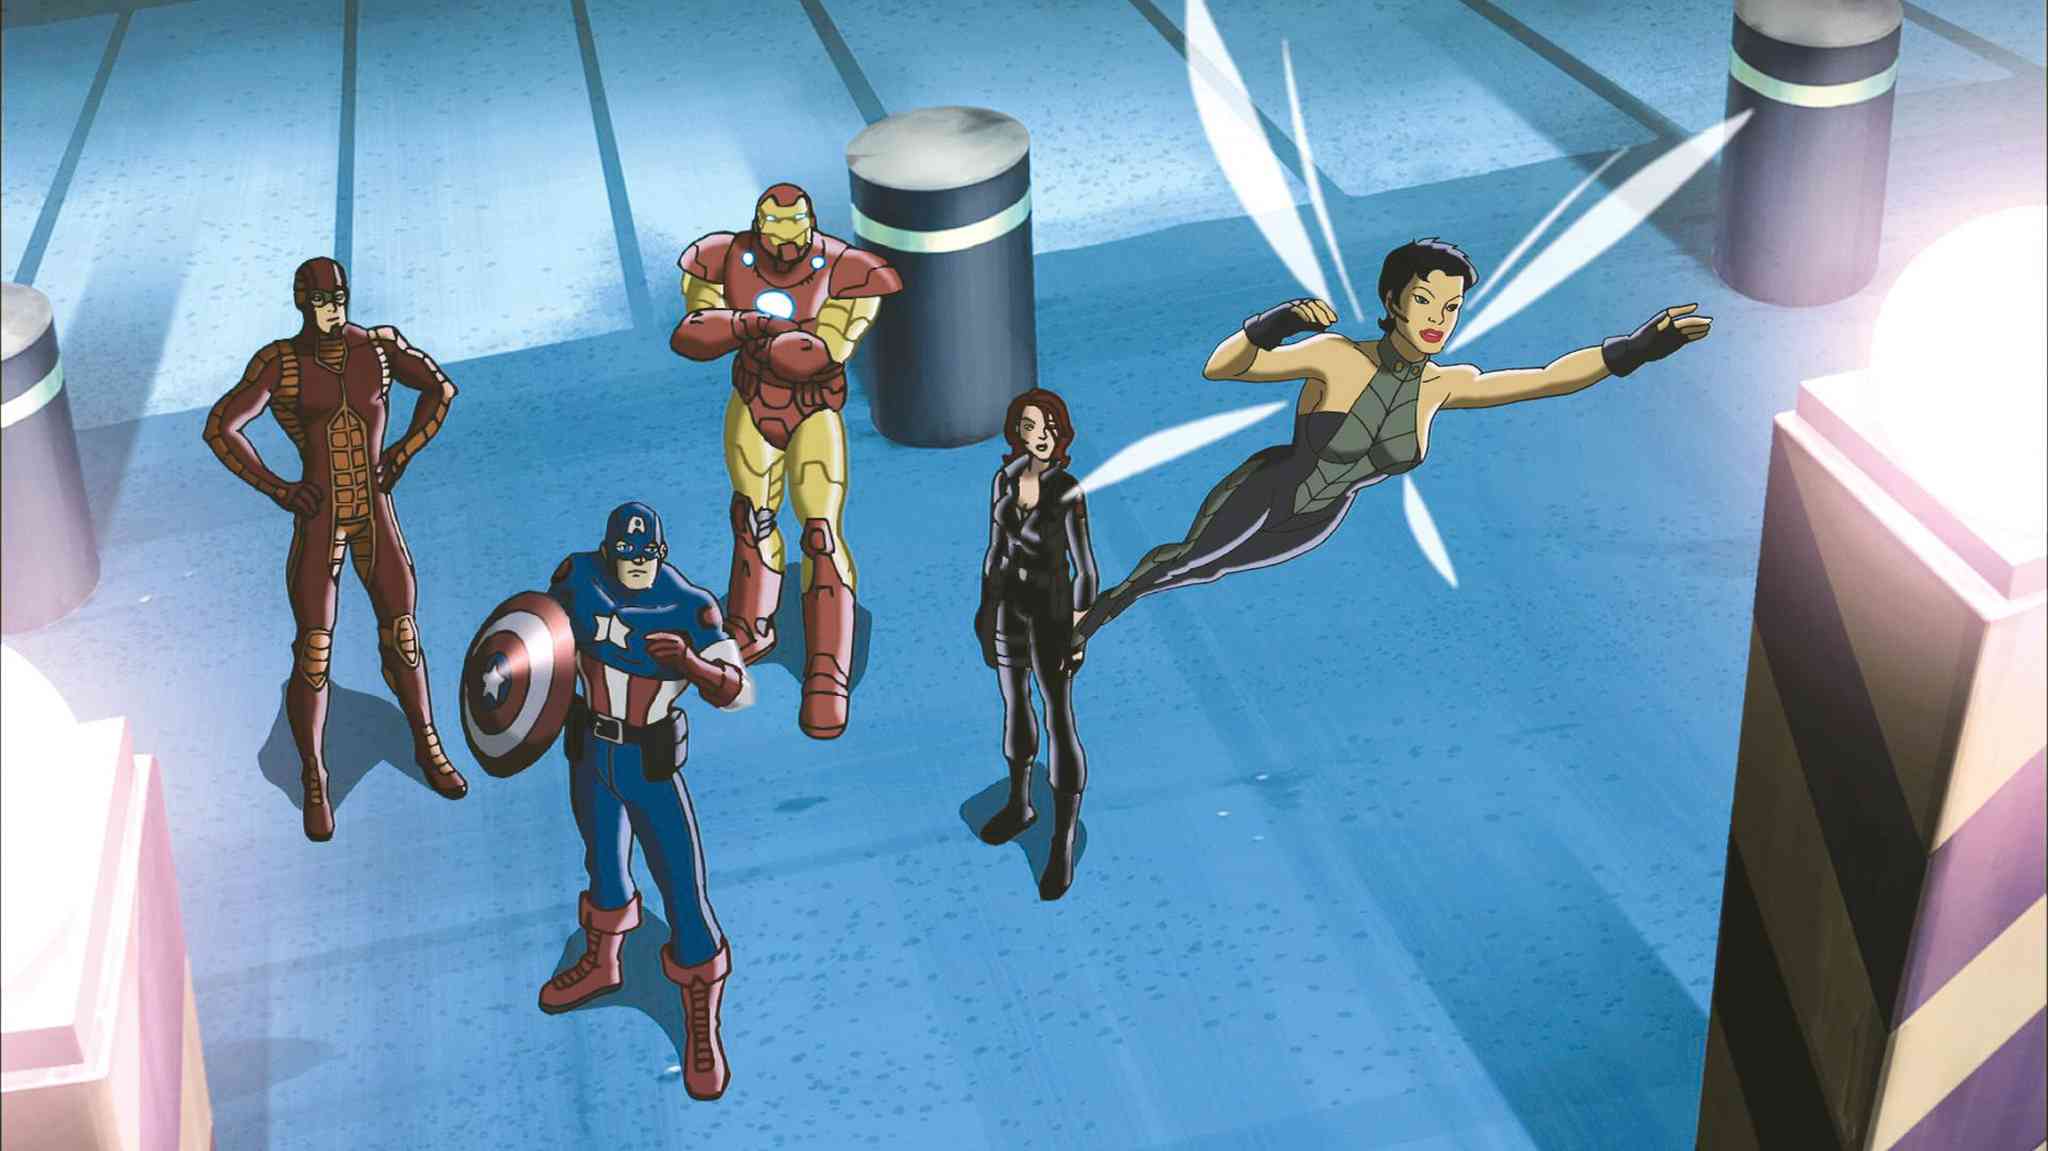 دانلود انیمیشن Ultimate Avengers: The Movie 2006